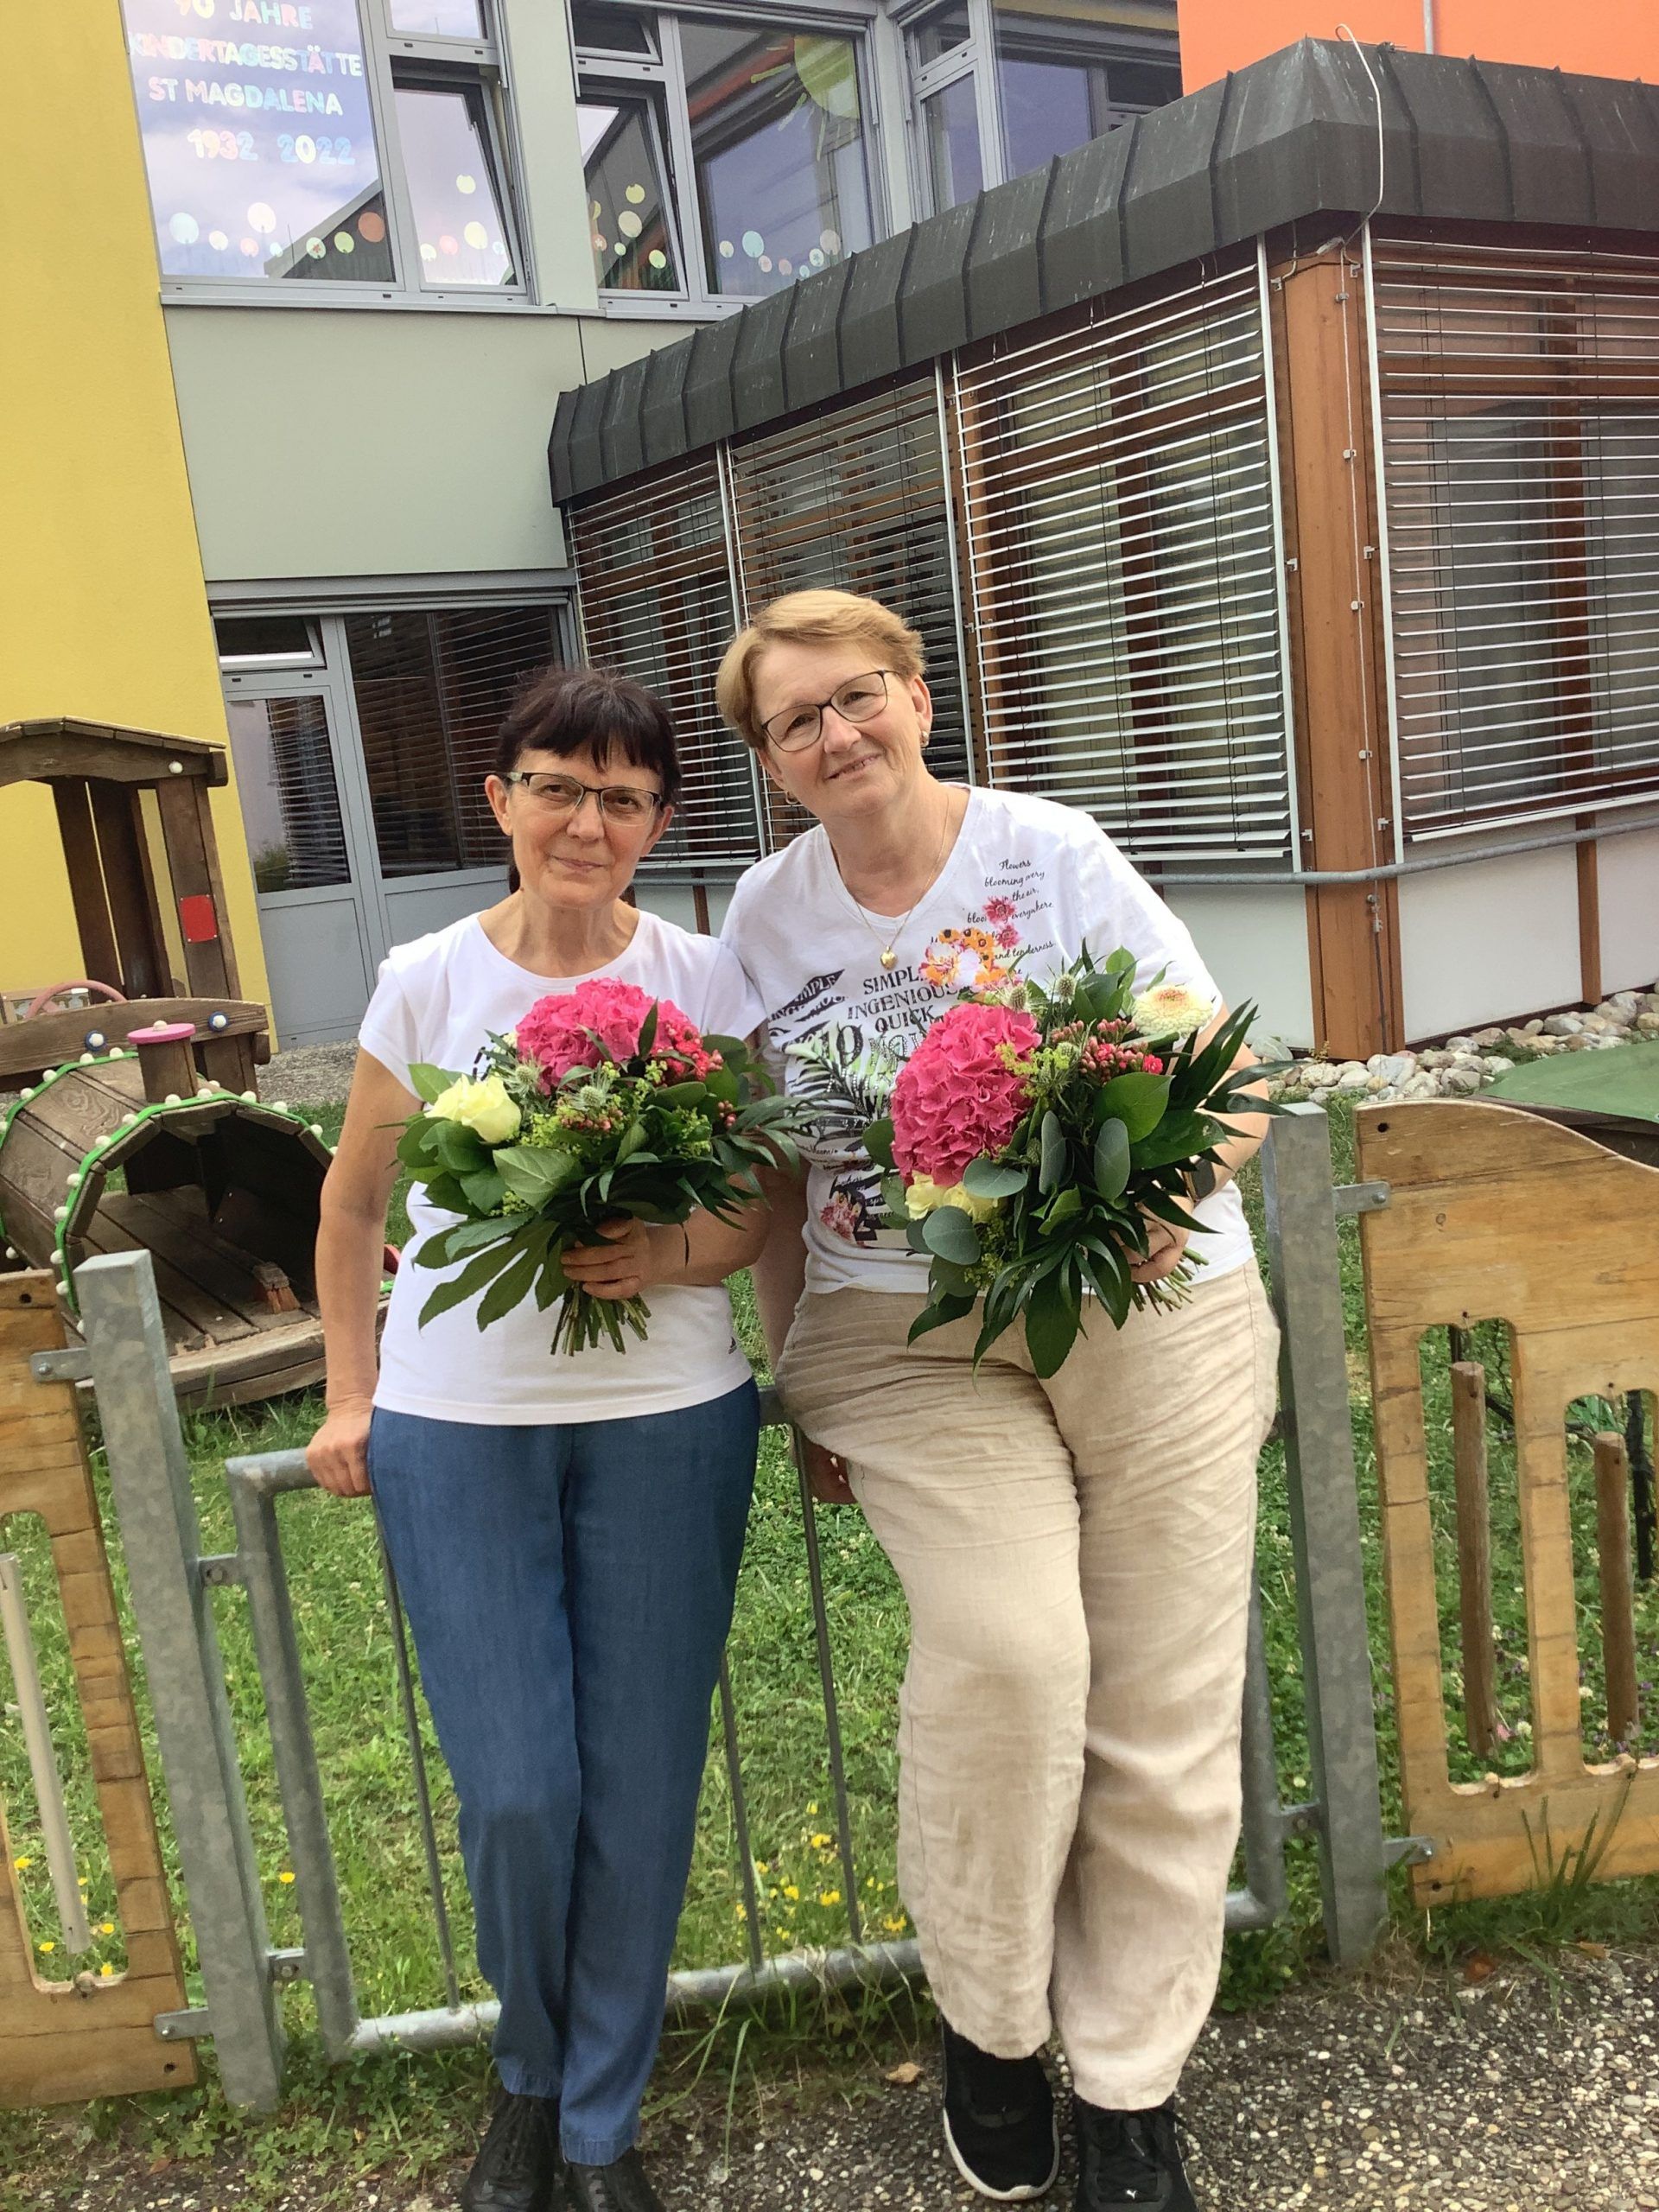 Kindertagesstätte St. Magdalena – Verabschiedung von Gabriele Troger und Klara Varga in den Ruhestand